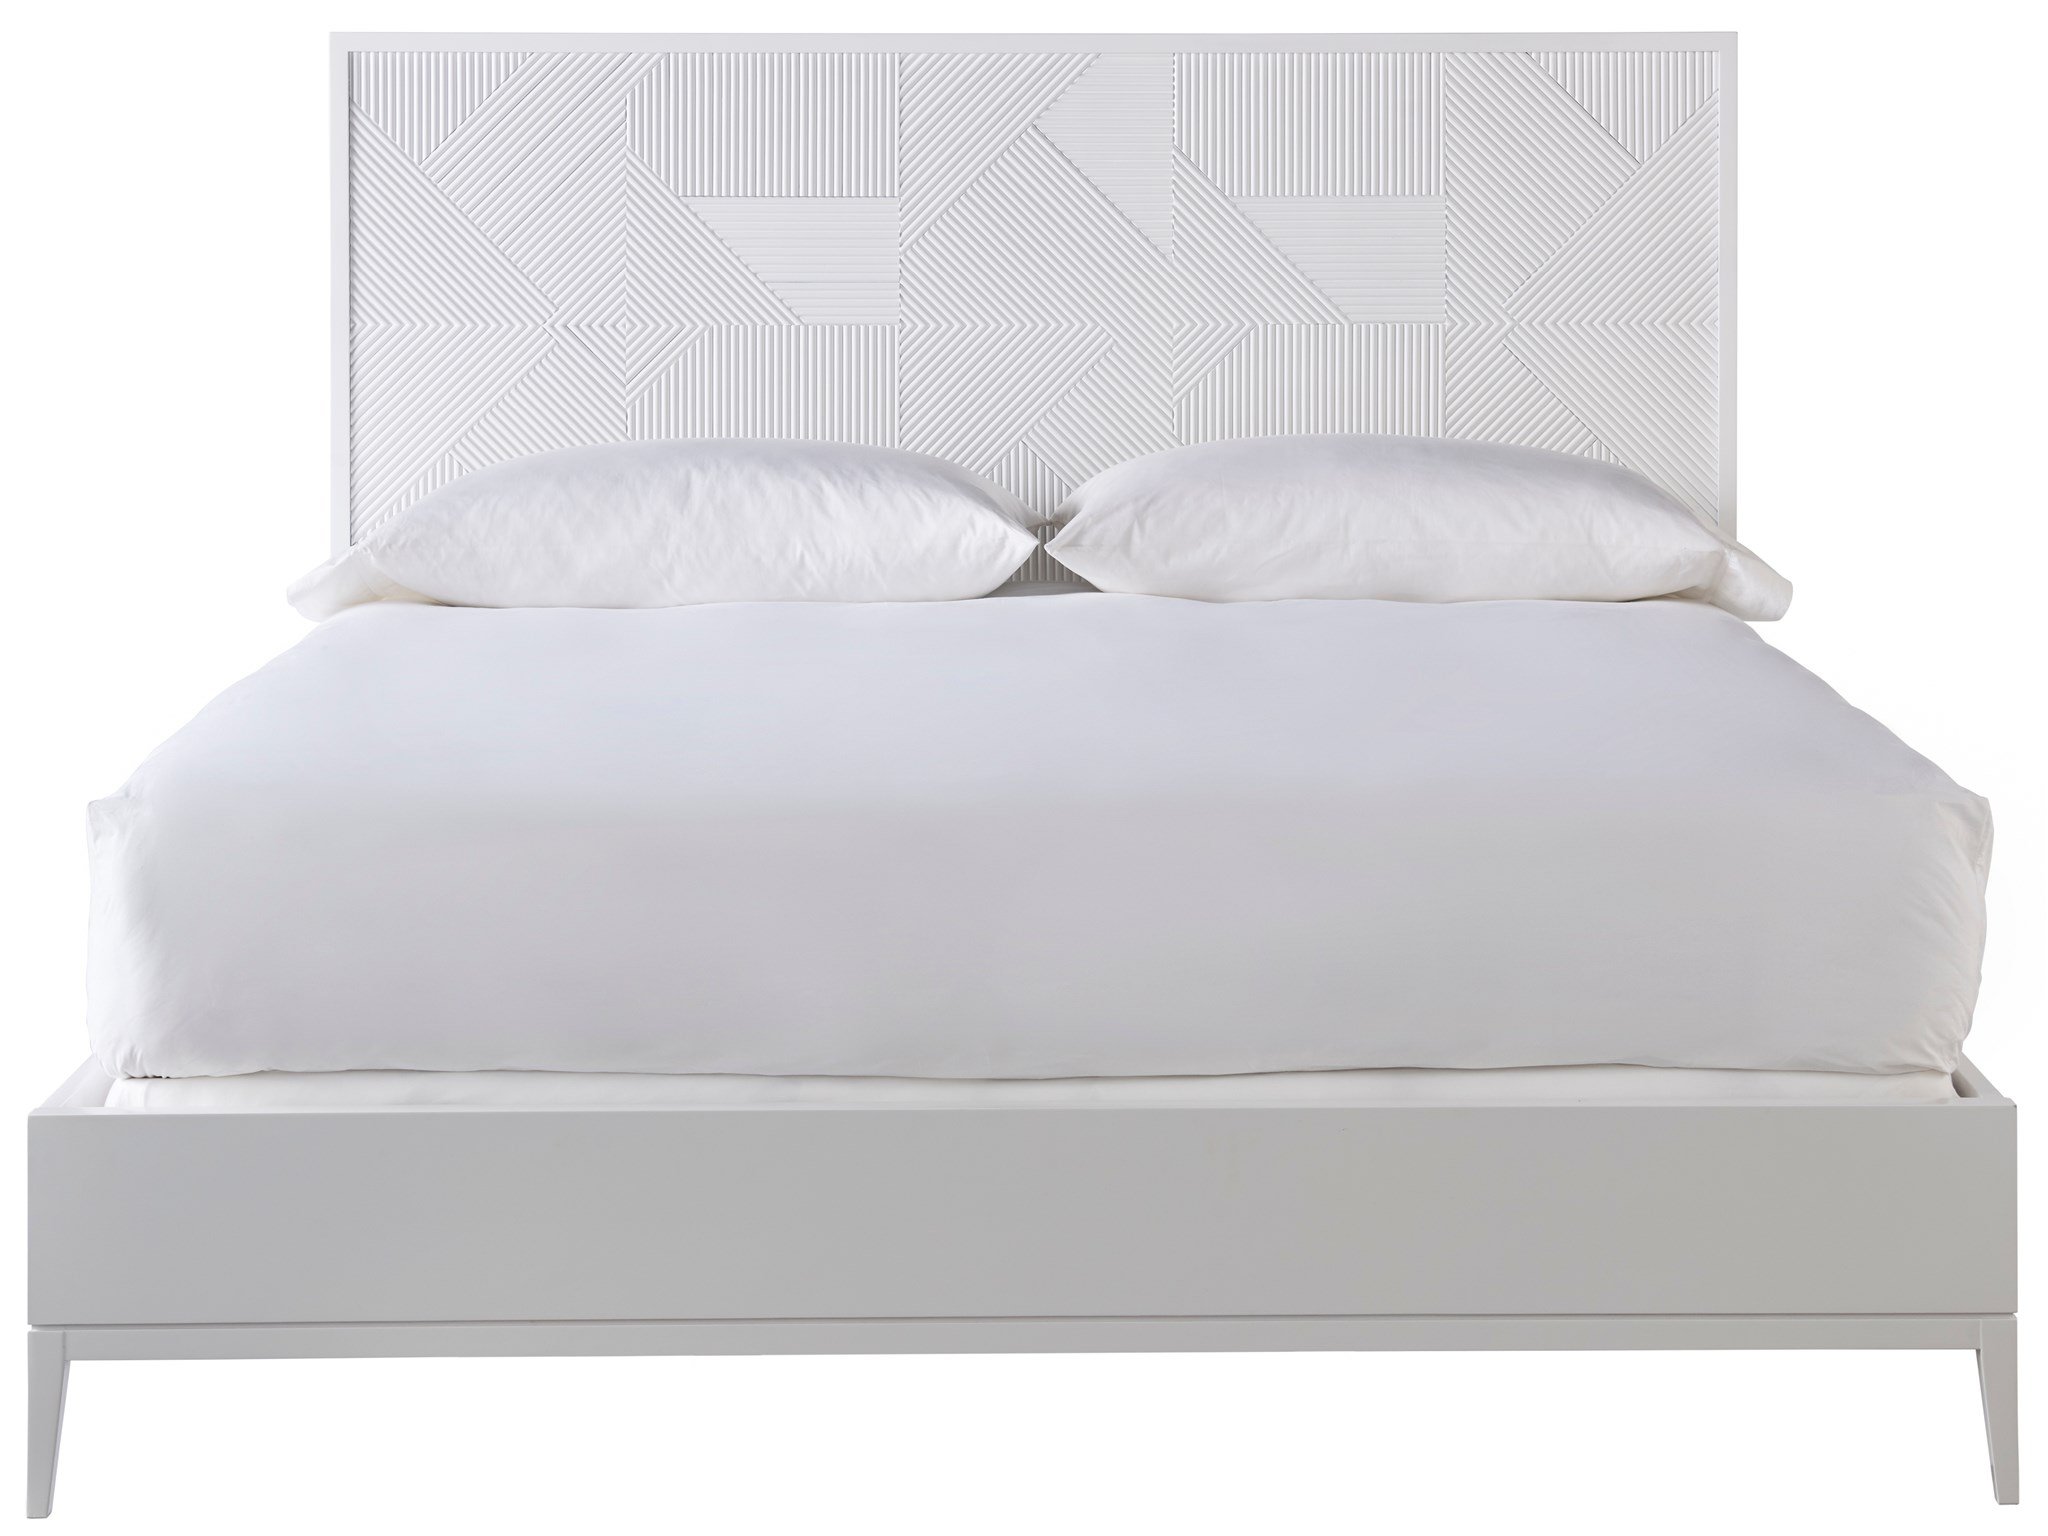 Malibu Queen Bed